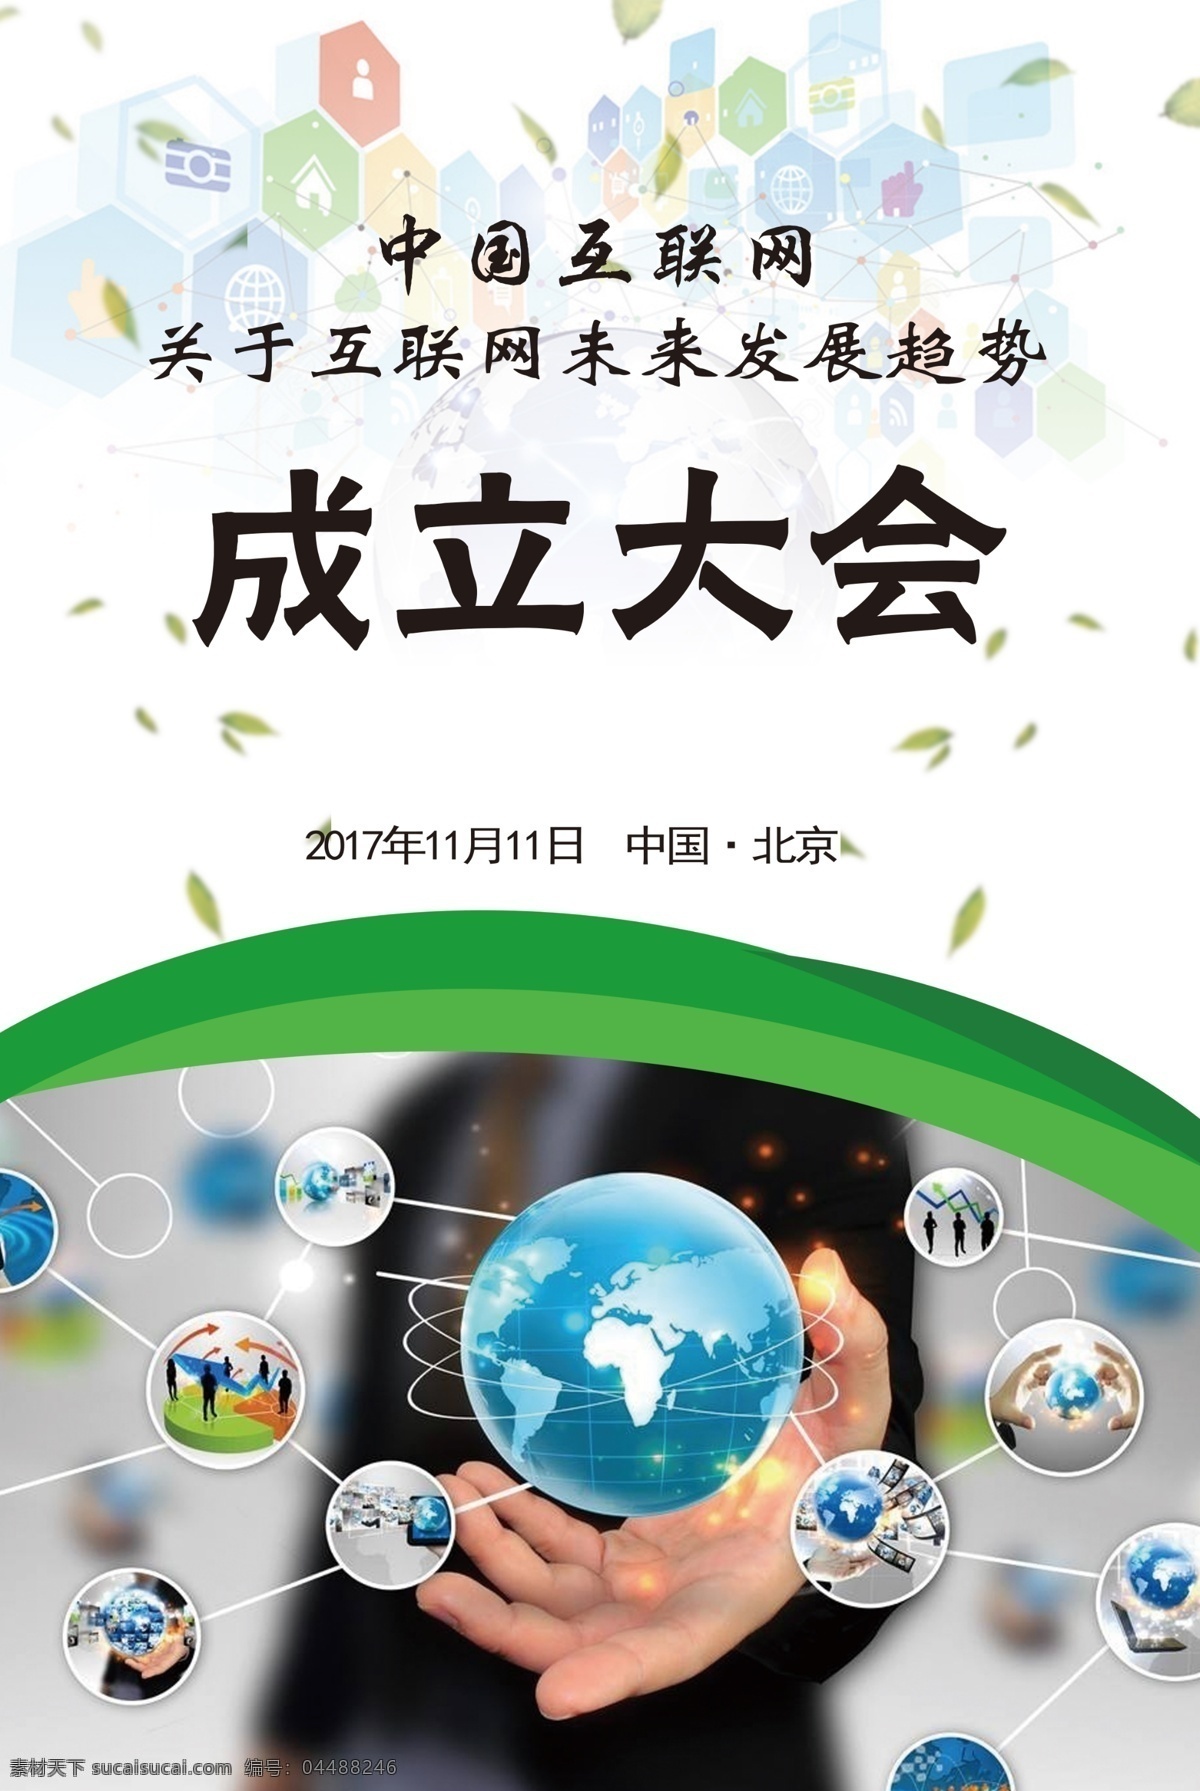 创意 中国 互联网 成立 大会 海报 科技 地球 计算机网络 高科技互联网 数码科技 数码电器 通讯网络 金融商务 通讯设备 通讯网 现代科技